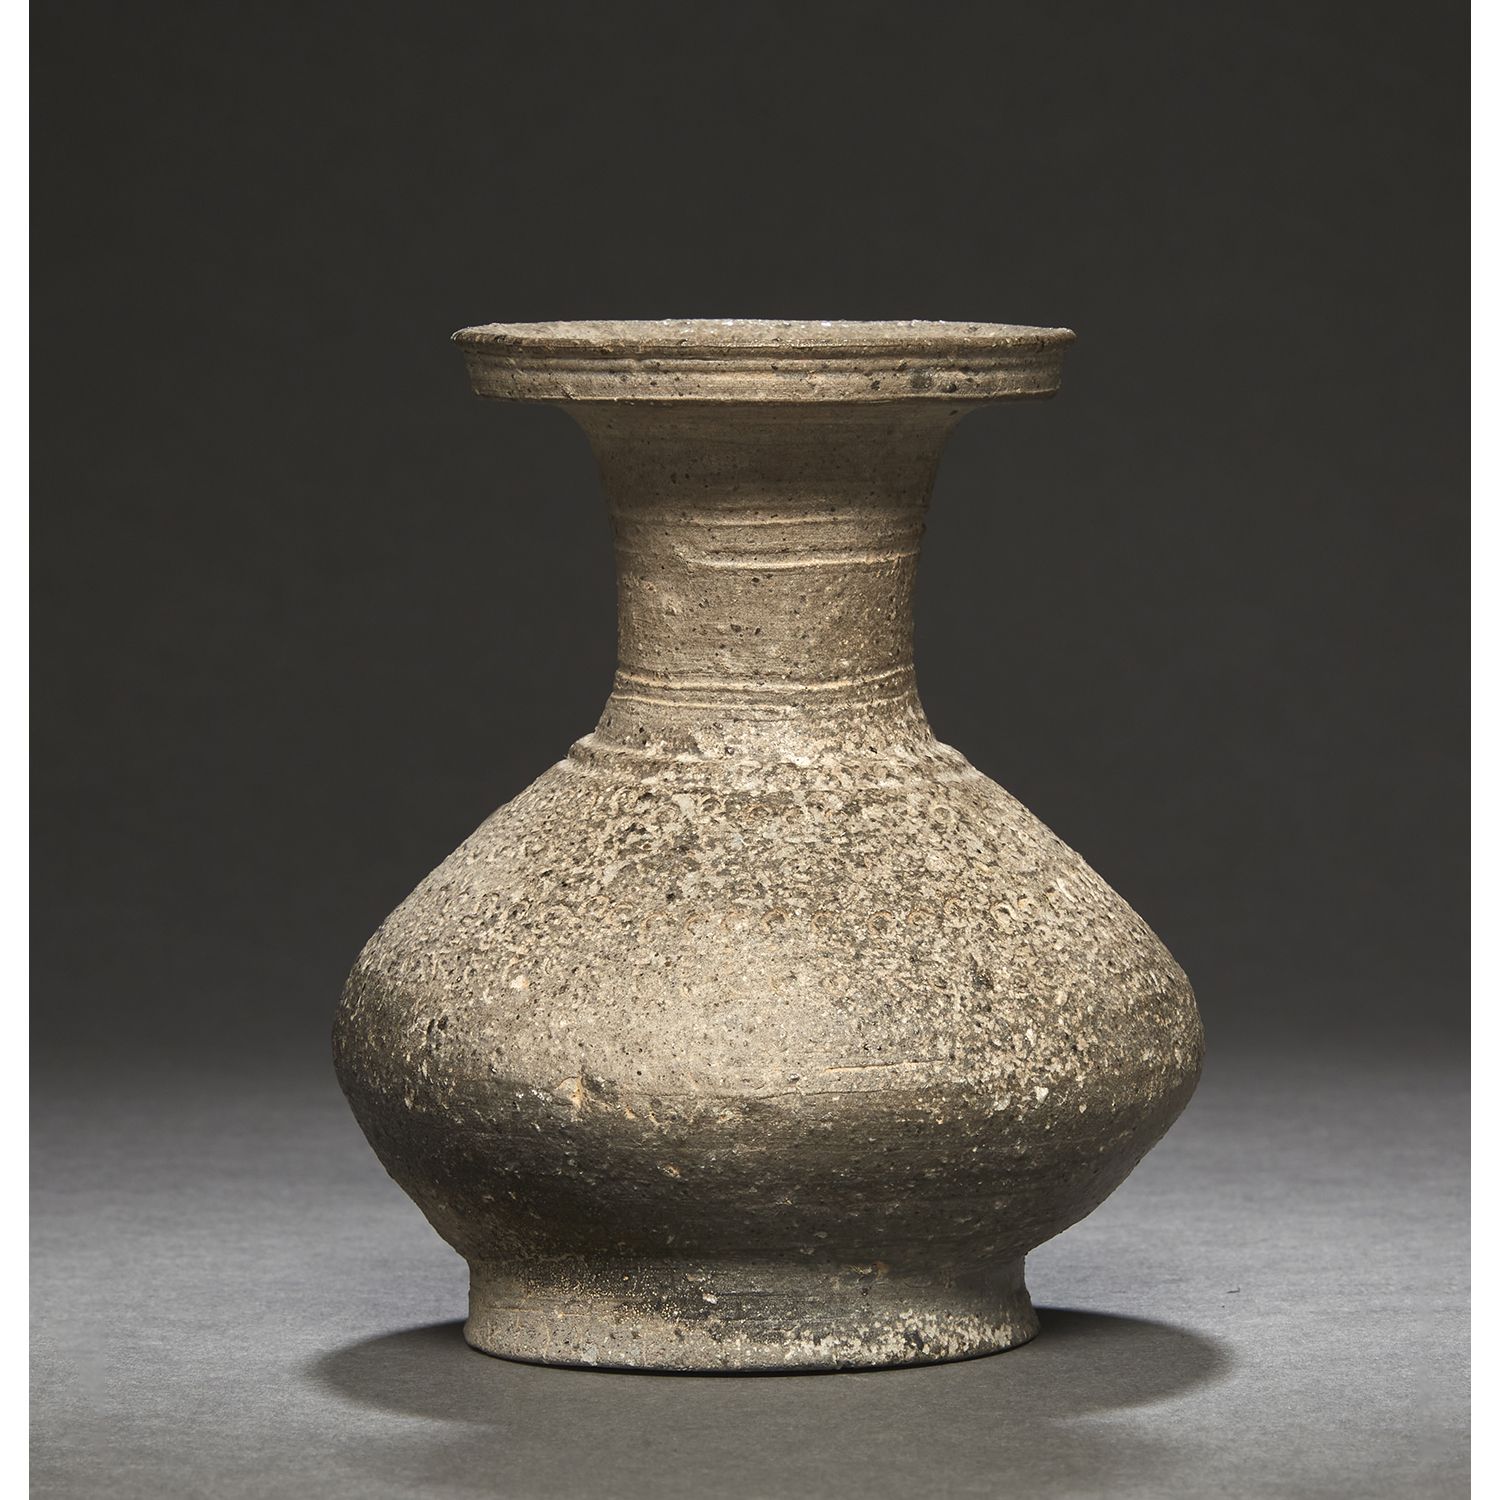 Null 一个小的灰黑色石器
花瓶，凿有珍珠坠子的装饰，颈部扁平。
韩国，新罗晚期，9-10世纪。
灰色黑色印记图案的石器花瓶，9-10世纪。
高度。12.5厘&hellip;